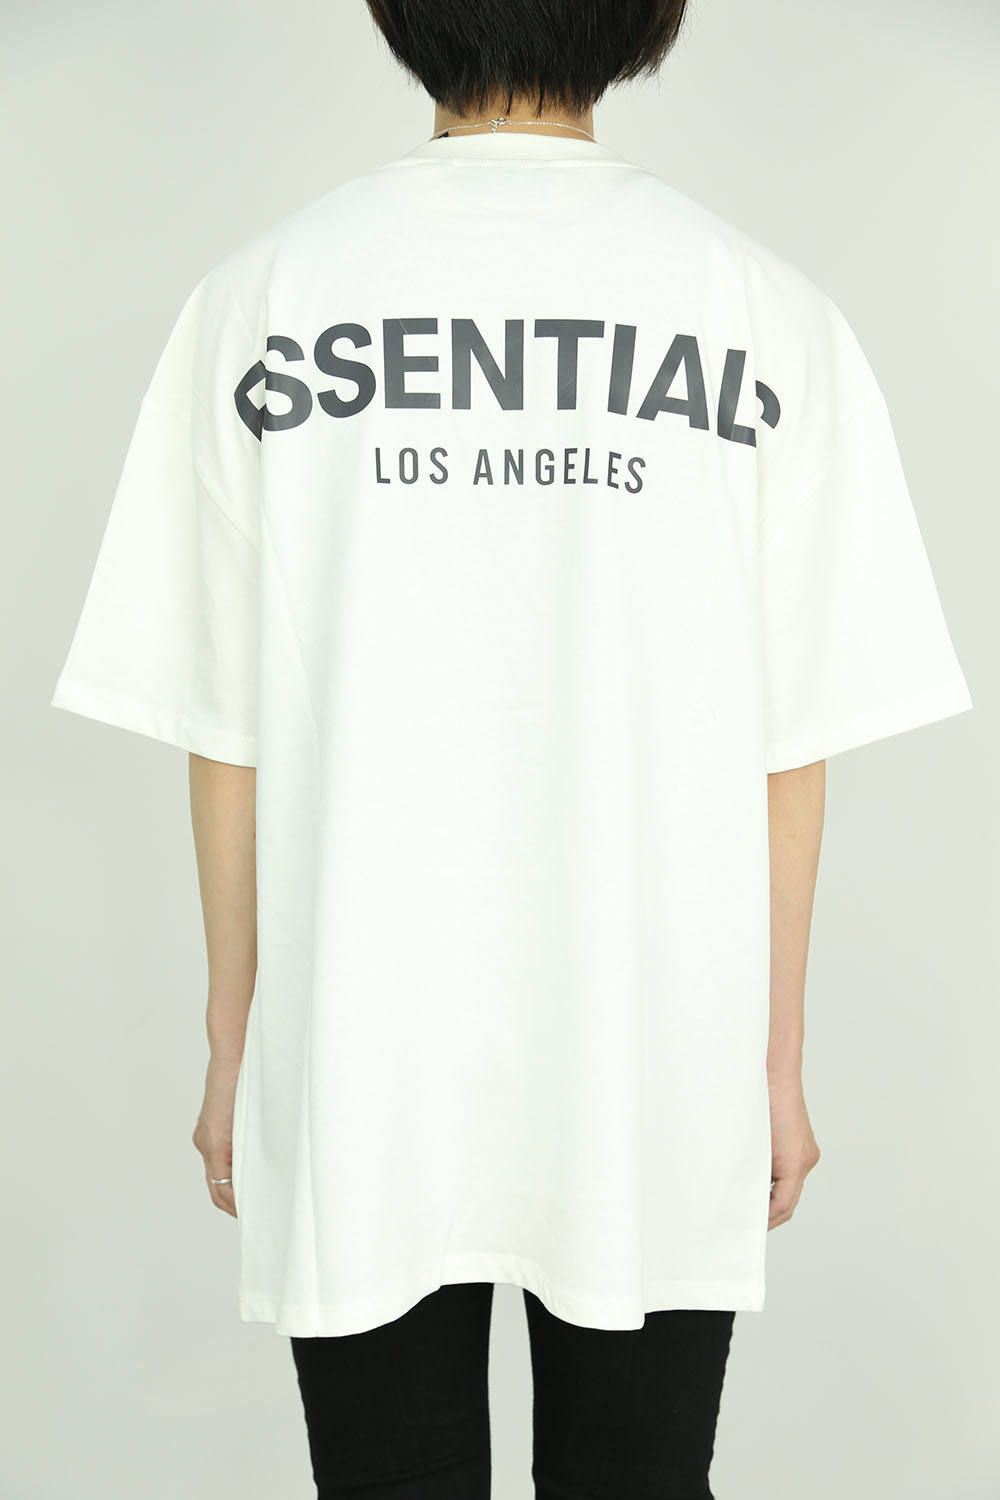 FOG エッセンシャルズ ロサンゼルス LA Tシャツ 灰 S